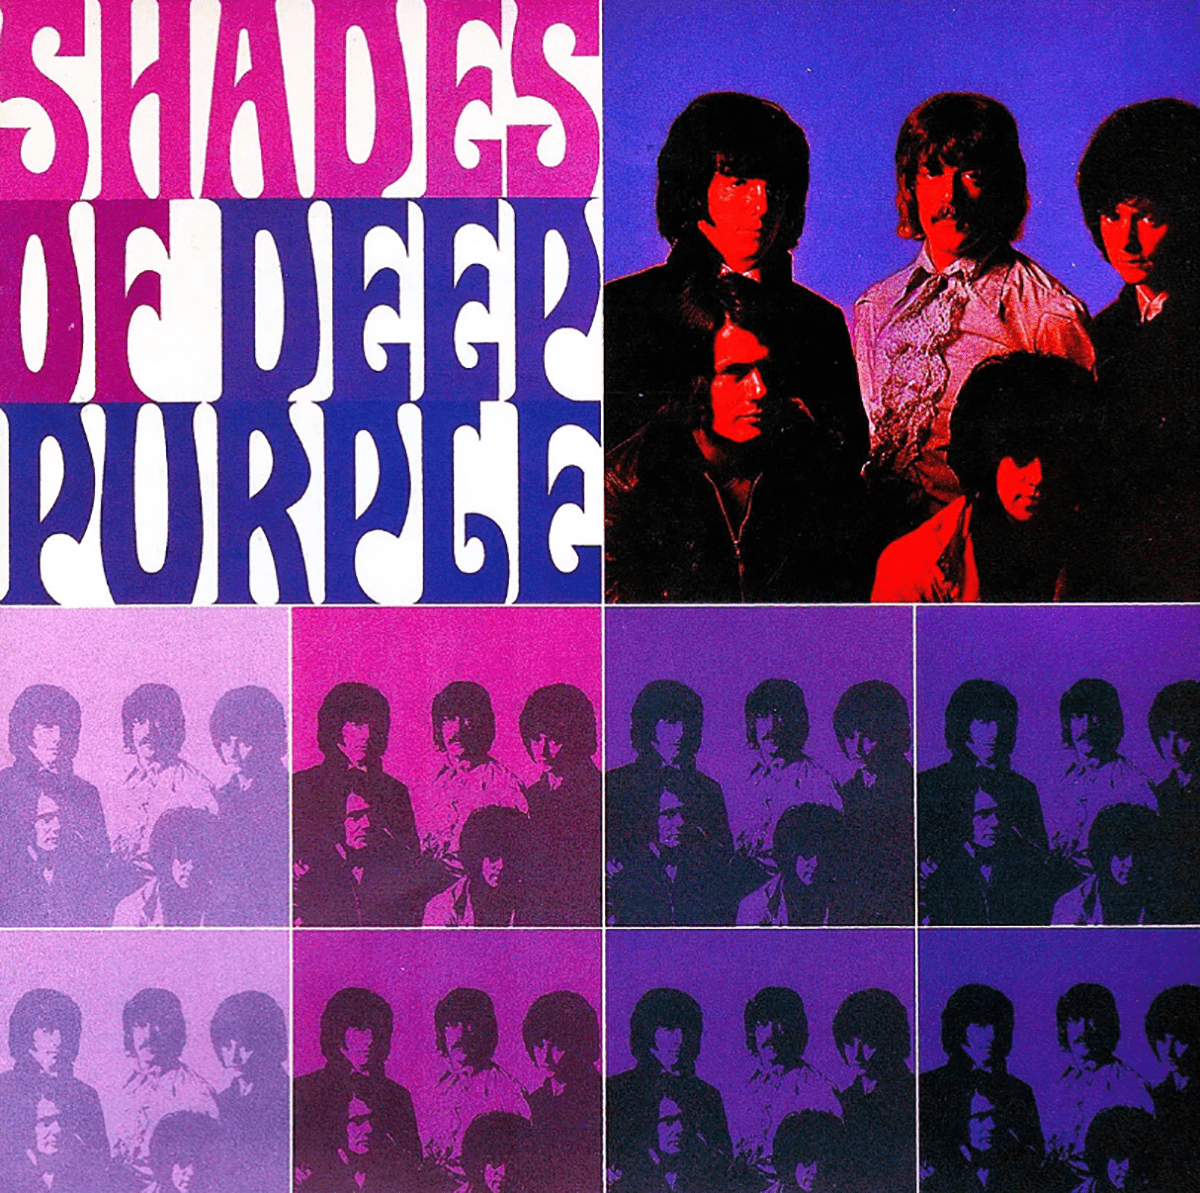 Couverture de l'album studio "Shades of Deep Purple", 1968